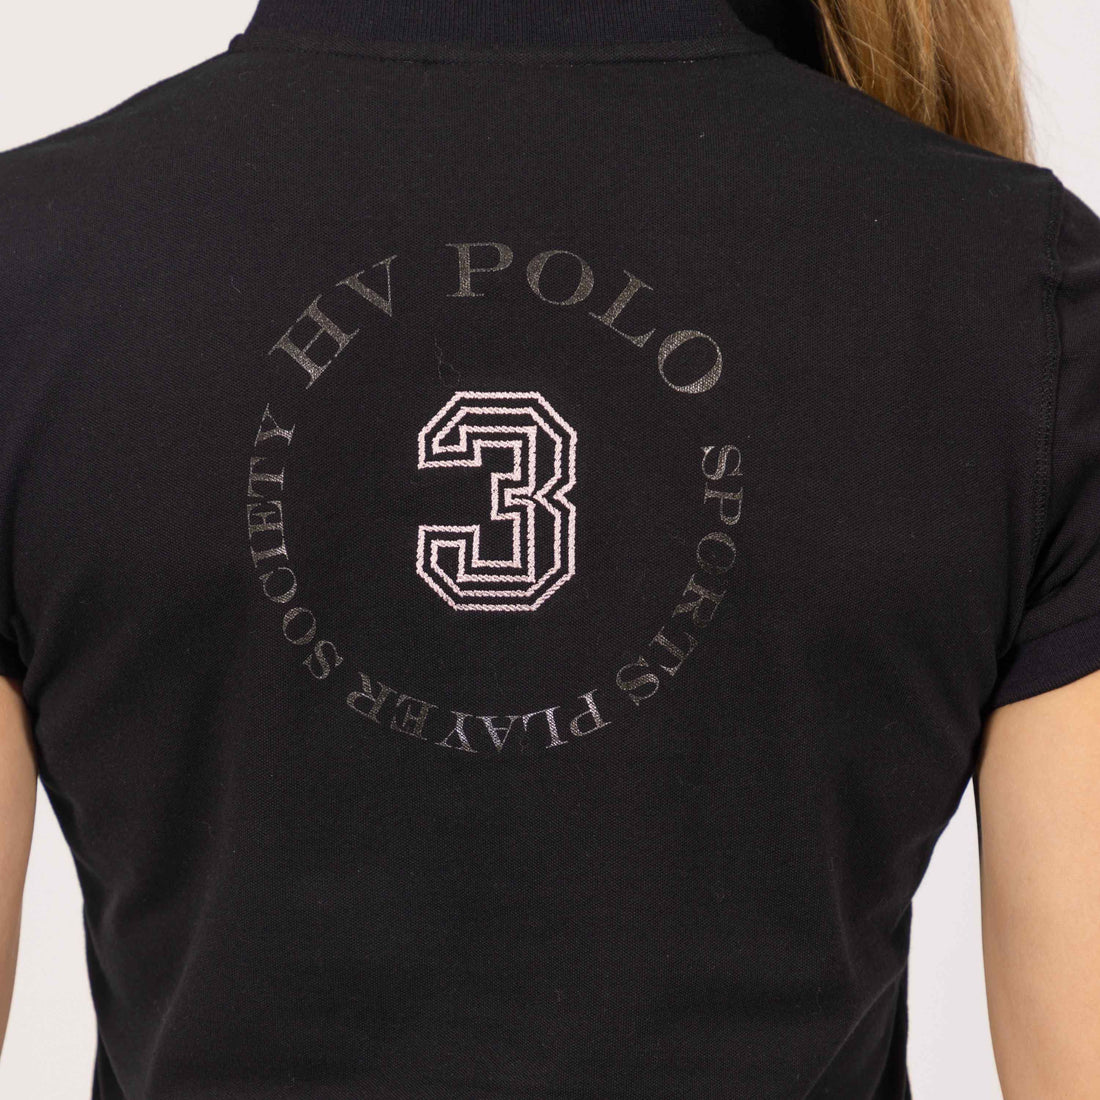 Hv Polo - Polo shirt, Dame, Favouritas Luxury - Black-Rose